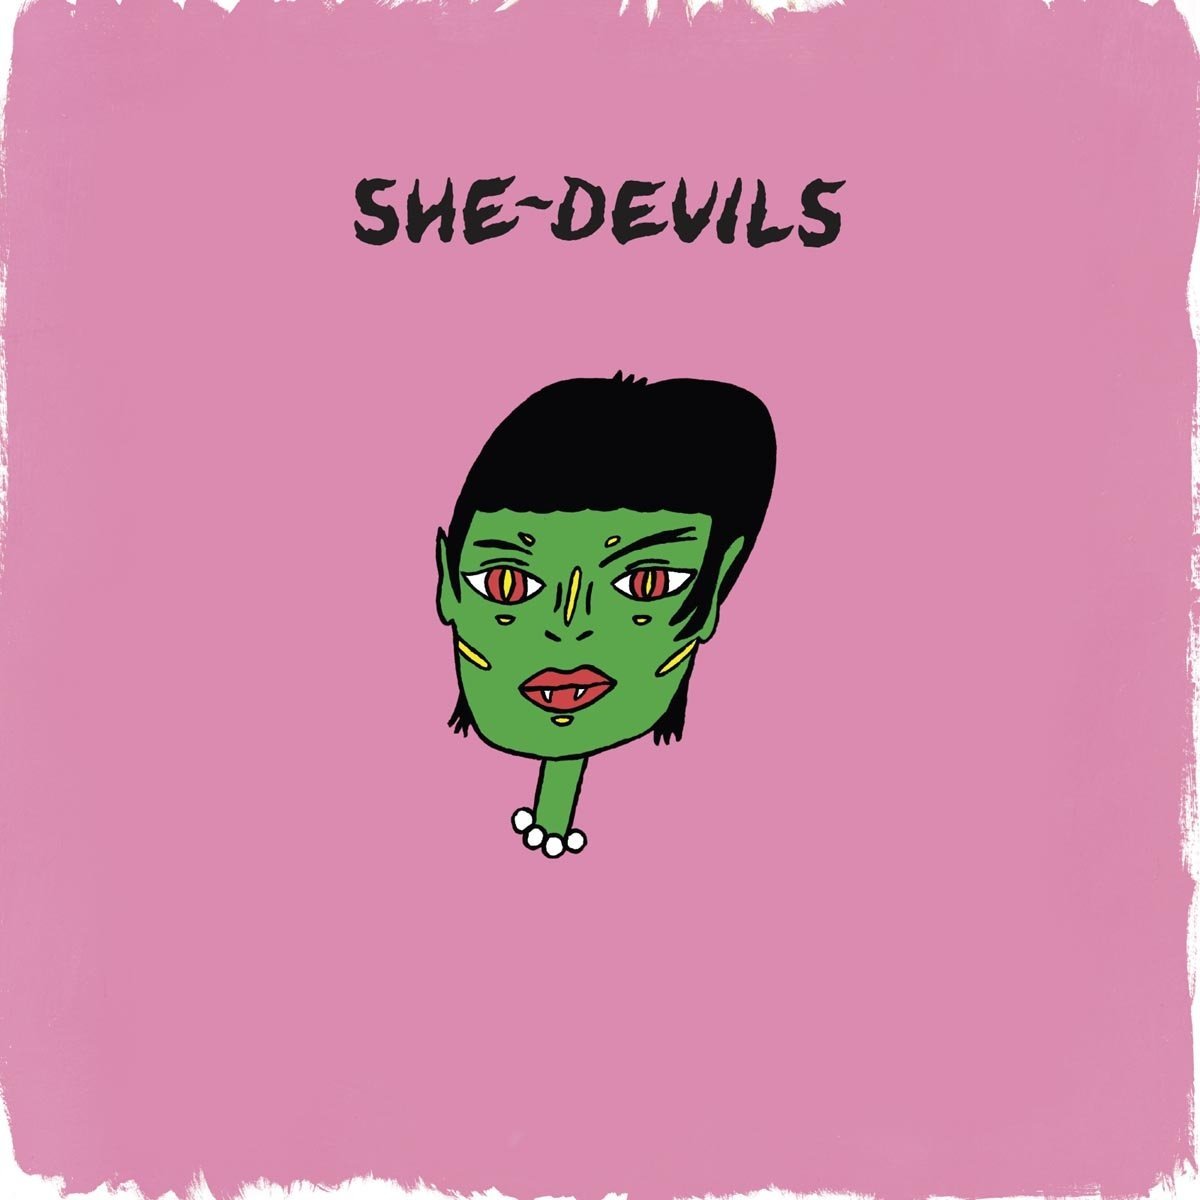 She Devils She Devils Album Review Loud And Quiet